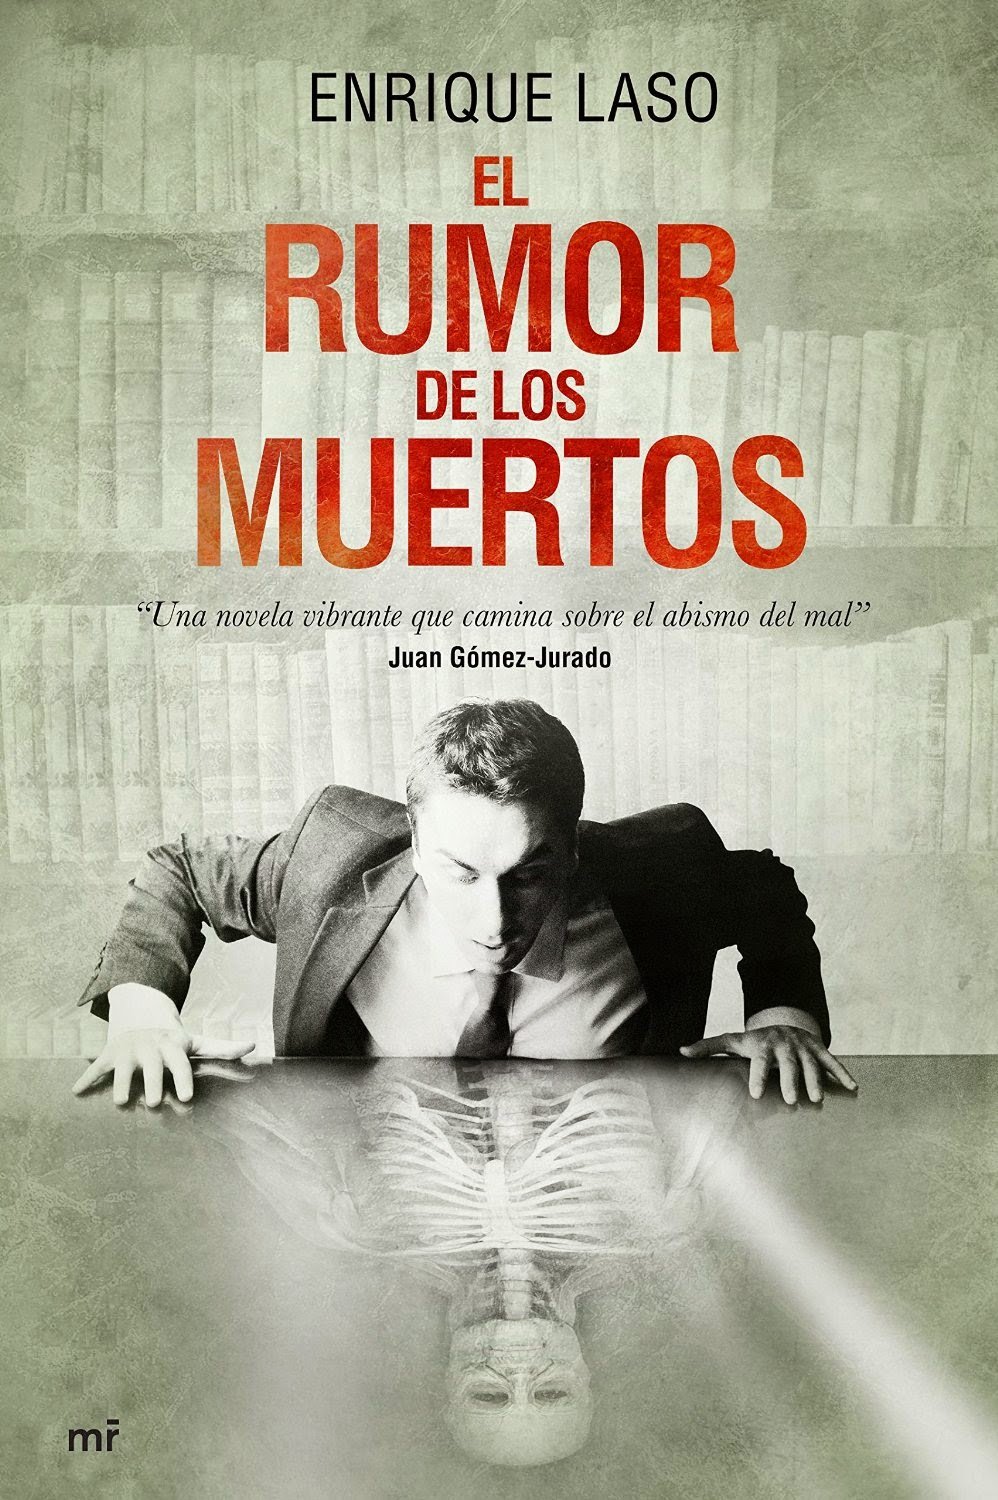 El Rumor MR 1 Hoy sale a la venta #ElRumordelosMuertos